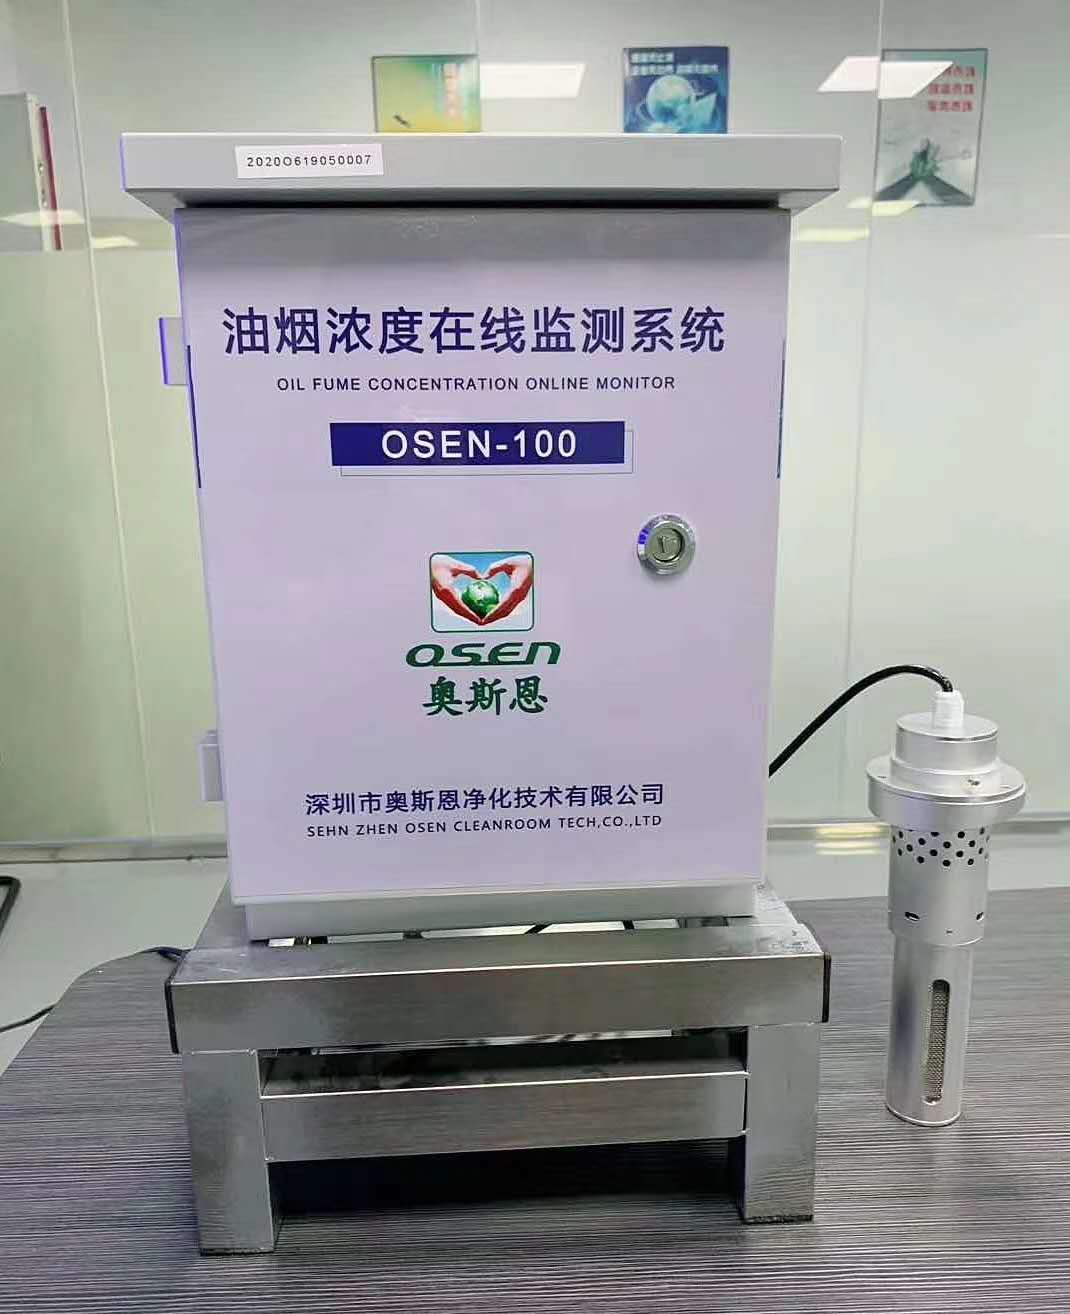 餐饮油烟监测设备工况监控仪 OSEN-100现货供应油烟浓度监测仪